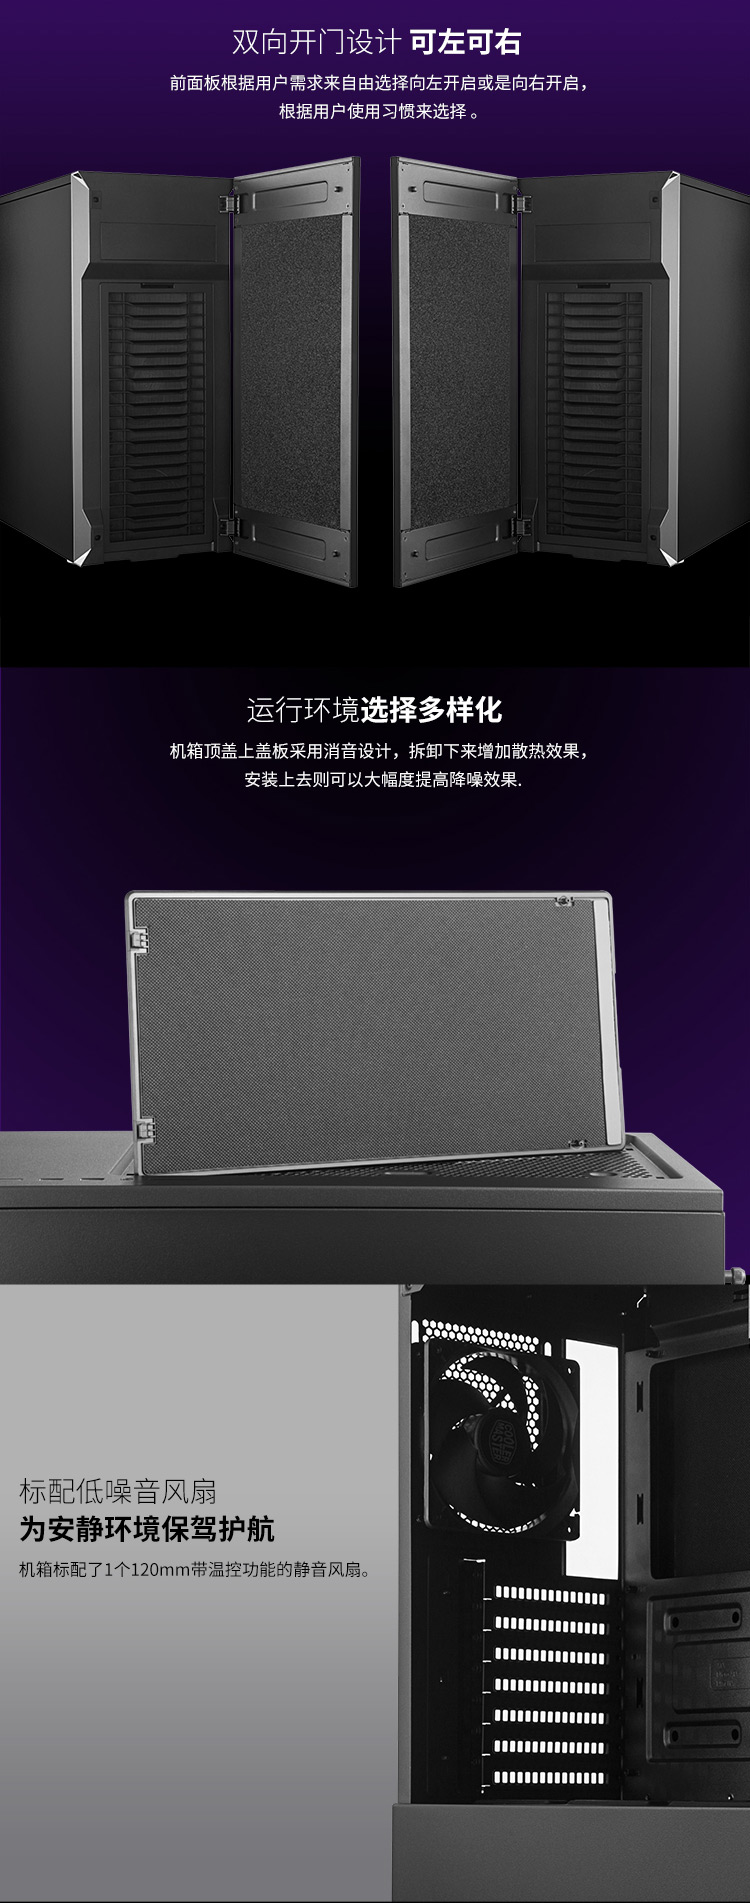 酷冷至尊(CoolerMaster)Silencio S600 (清风侠)标准版中塔静音机箱(ATX/附静音棉/双向开门设计/独立电源仓)